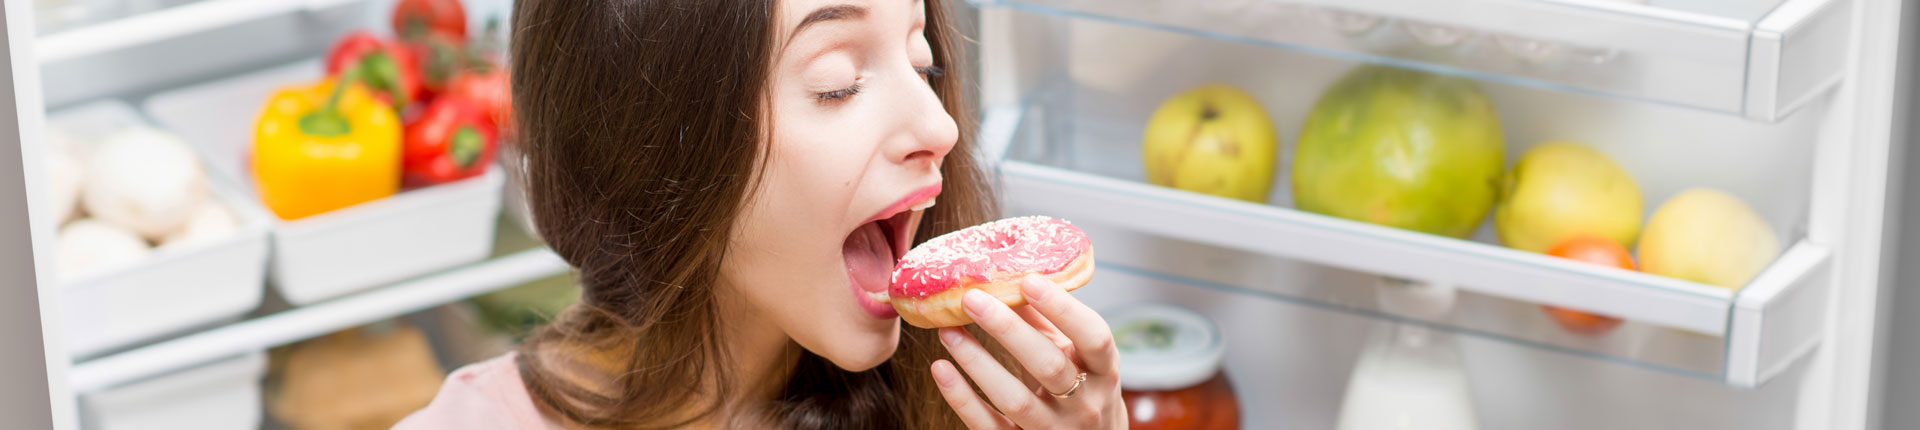 Czy jesz za dużo cukru? 6 niepokojących oznak